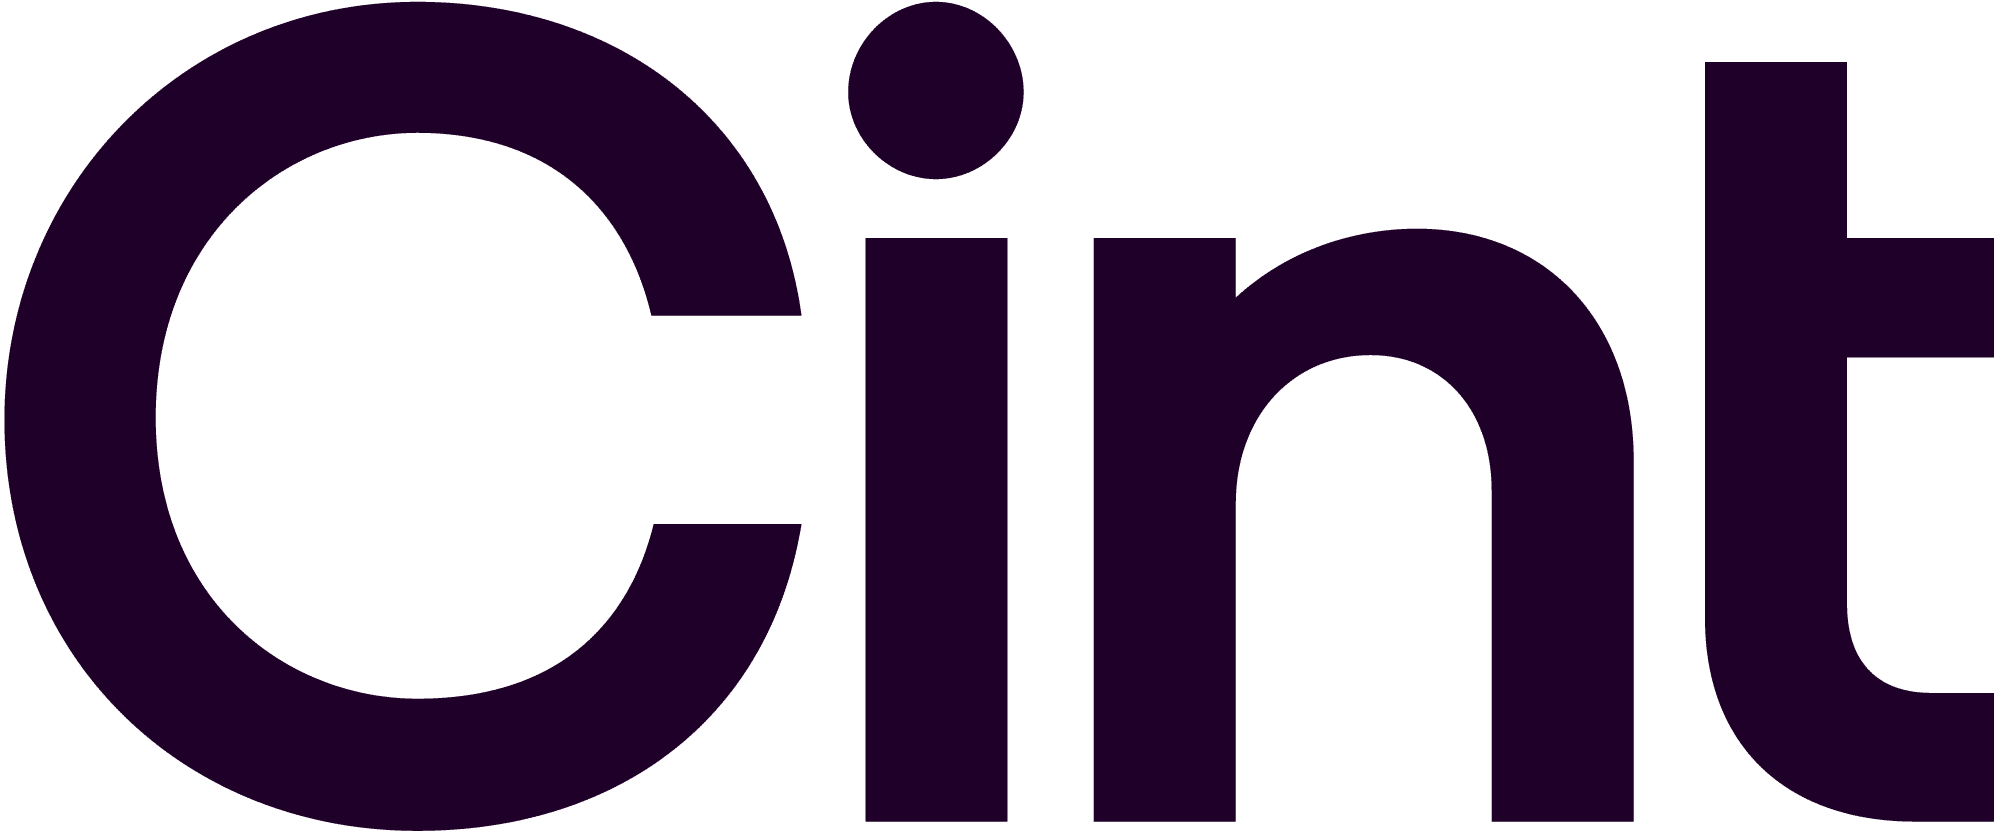 Cint Logo